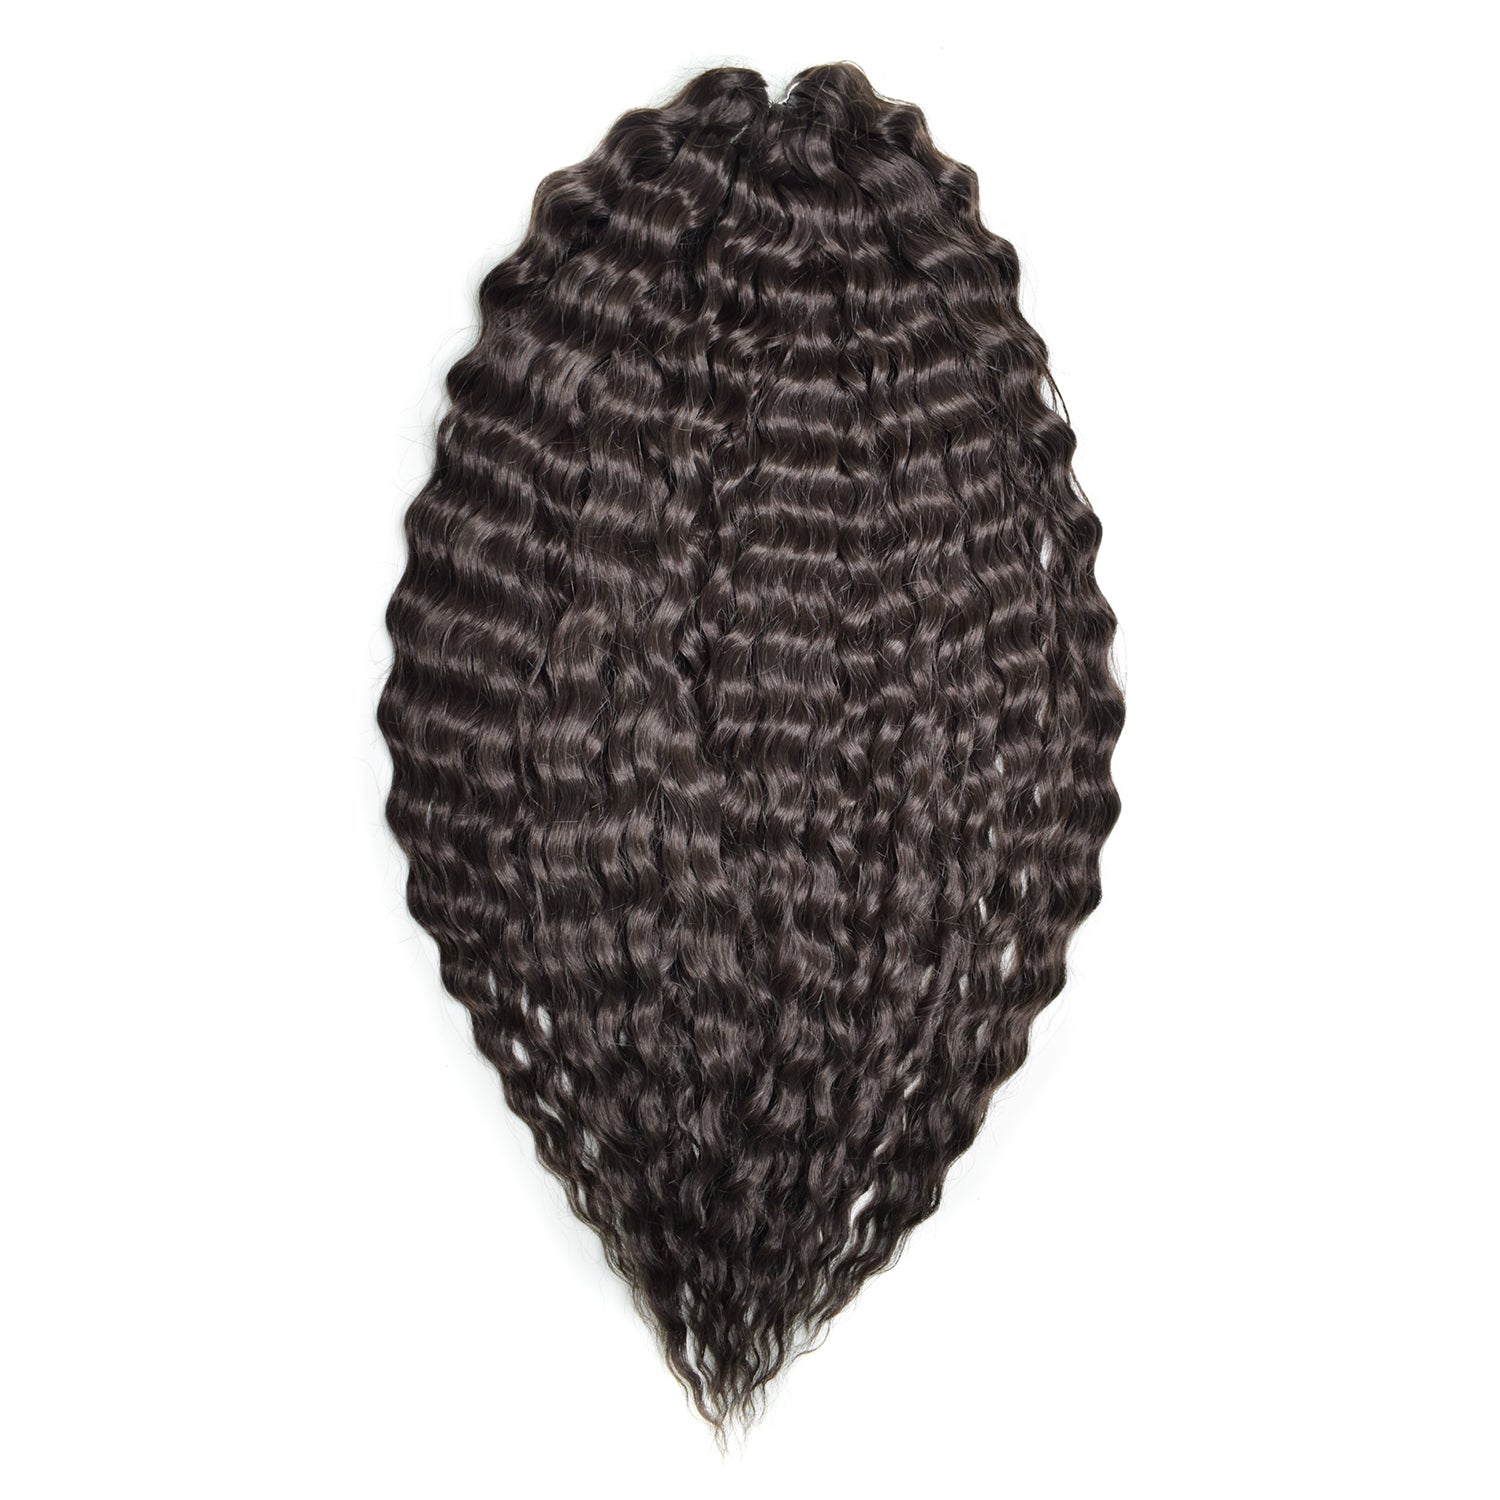 Афрокудри для плетения волос Ariel цвет 4 темный шоколад длина 60см вес 300г